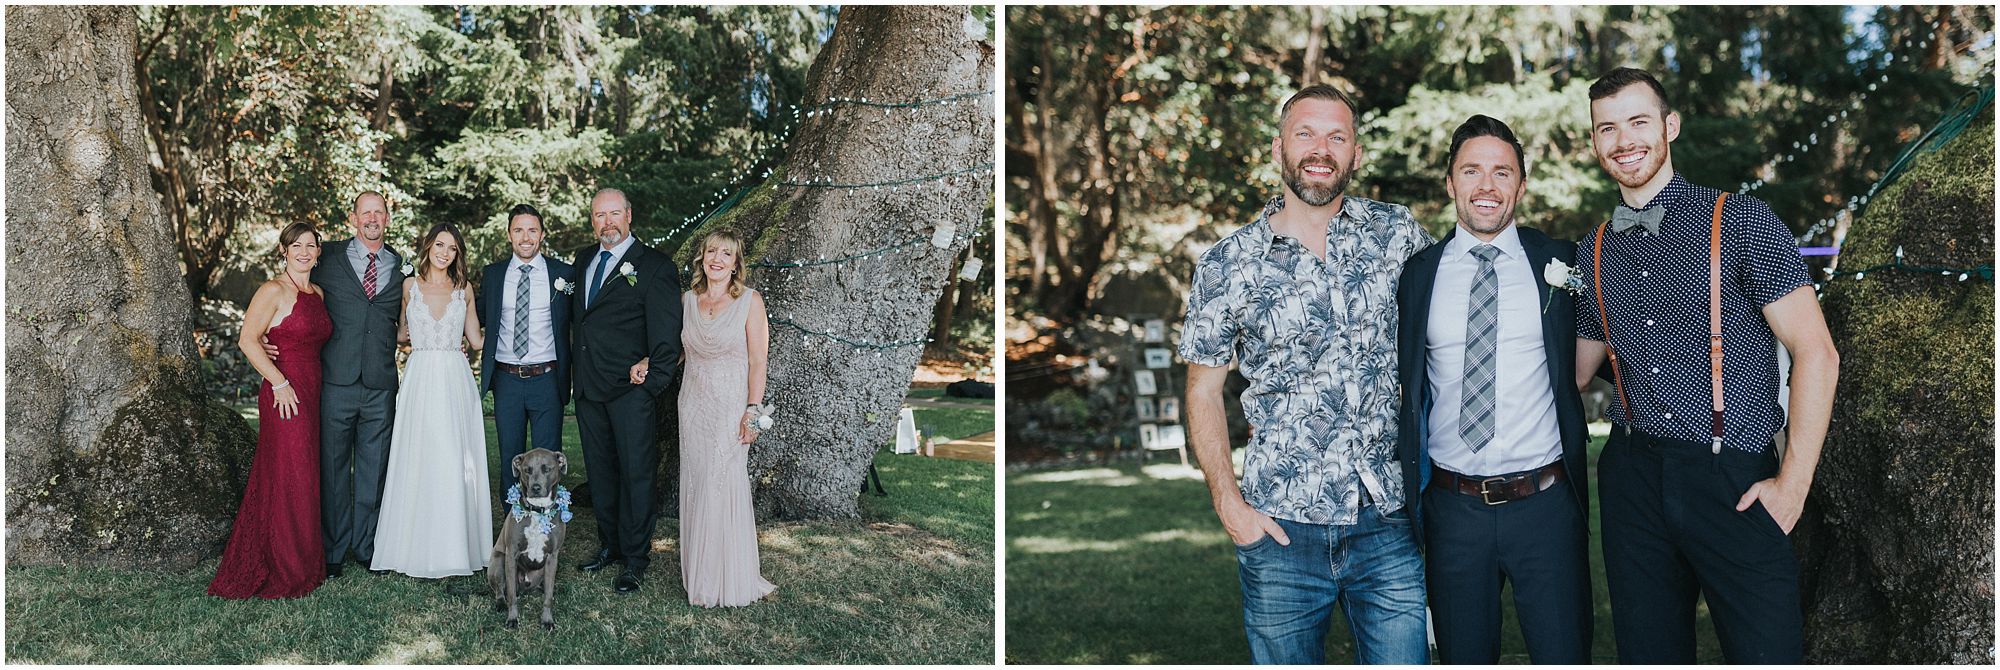 family photos at wedding 